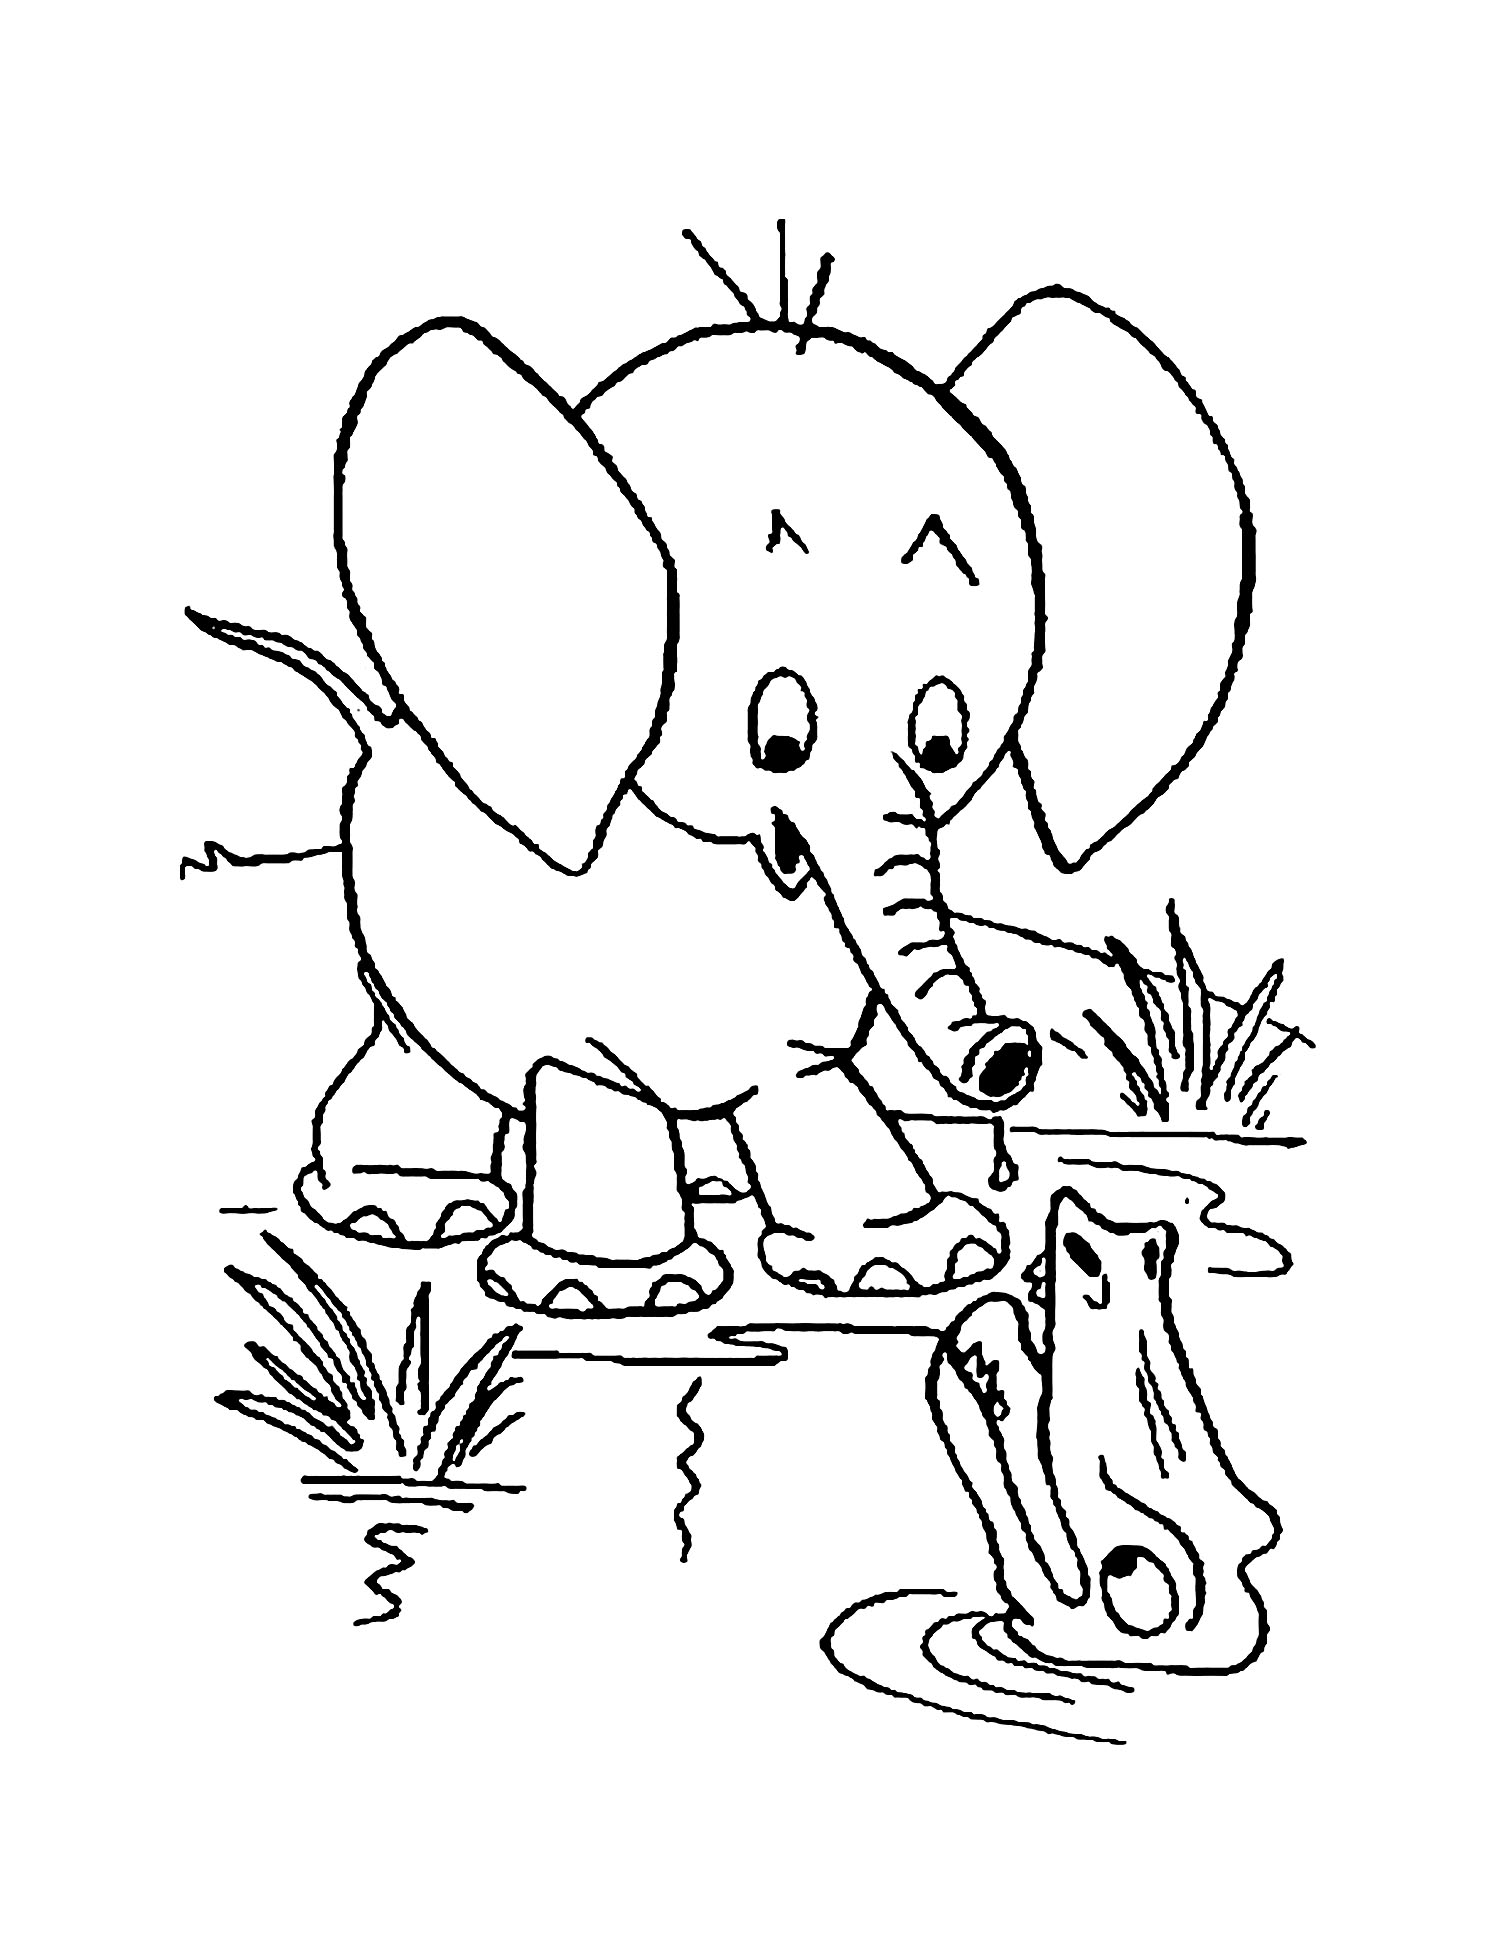 Dibujos para colorear de elefantes para niños